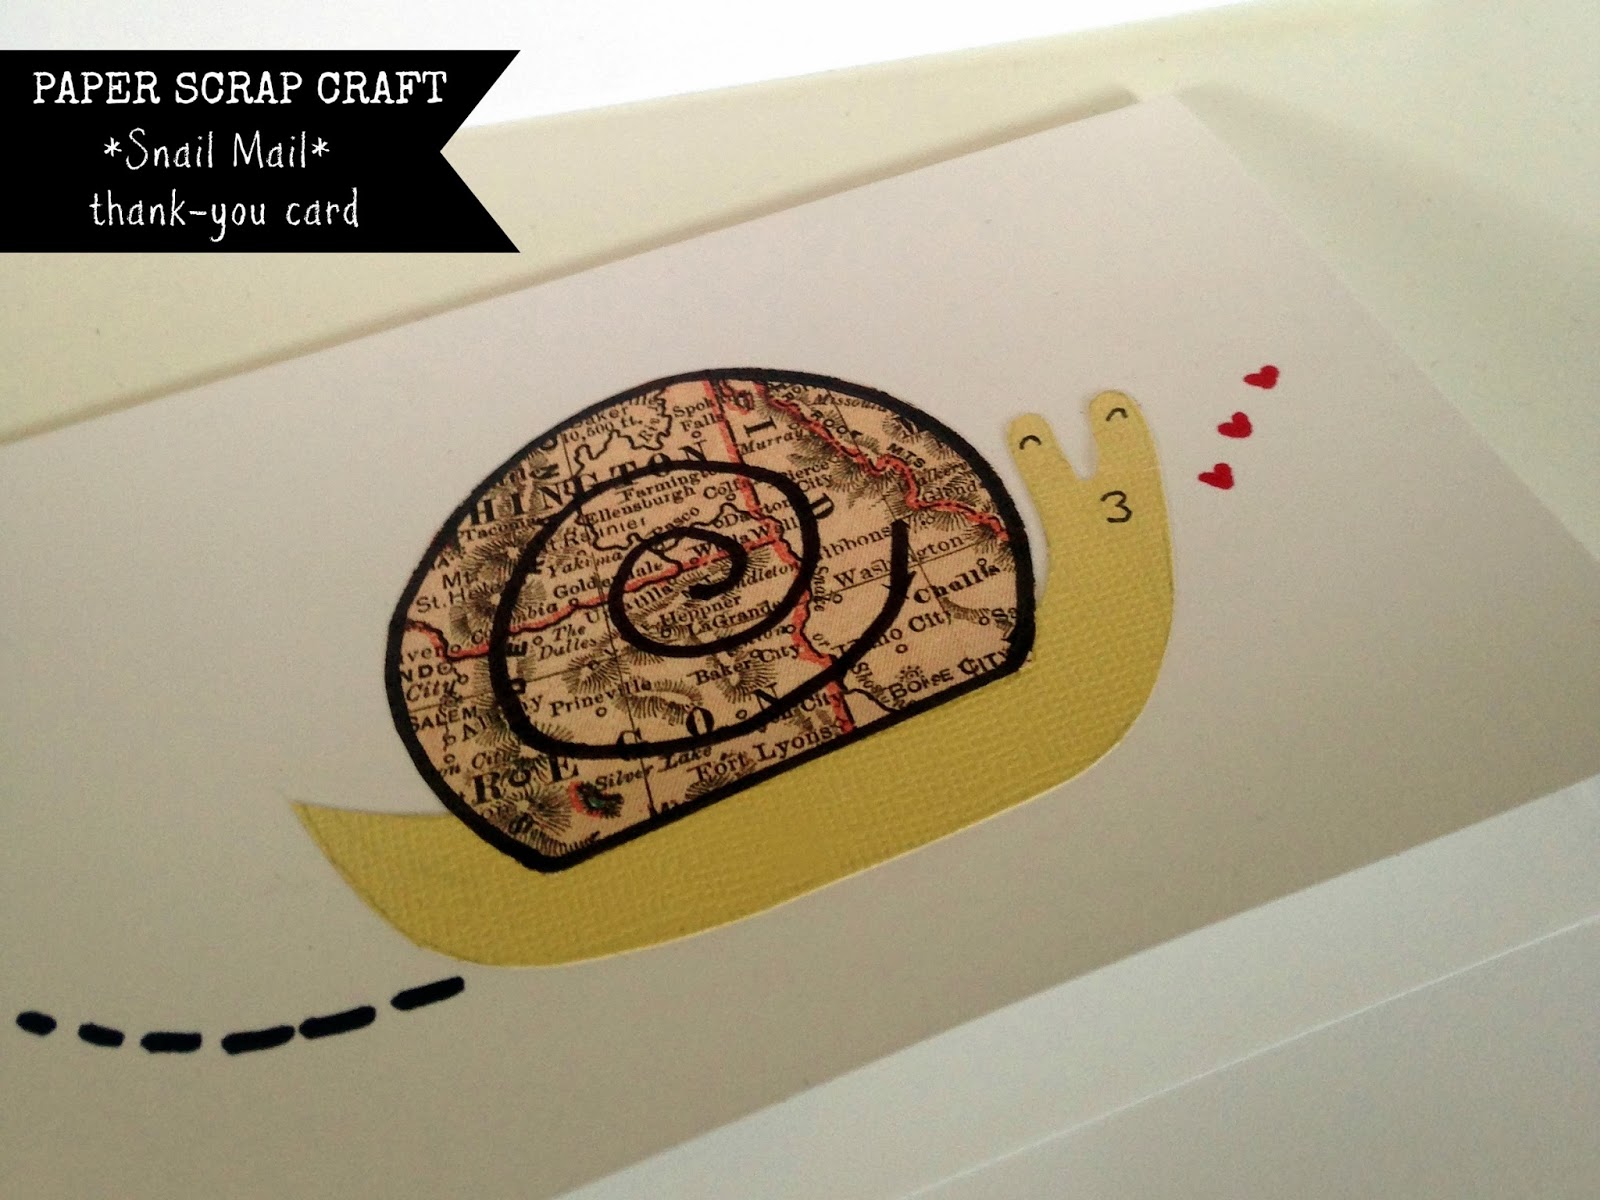 http://4.bp.blogspot.com/-Pc-pHs-NeRw/UwklD4pFfRI/AAAAAAAAZs8/8c4XKuQUcgM/s1600/snail+mail+scrap+paper+belated+thank+you+card+project+snail-004.jpg